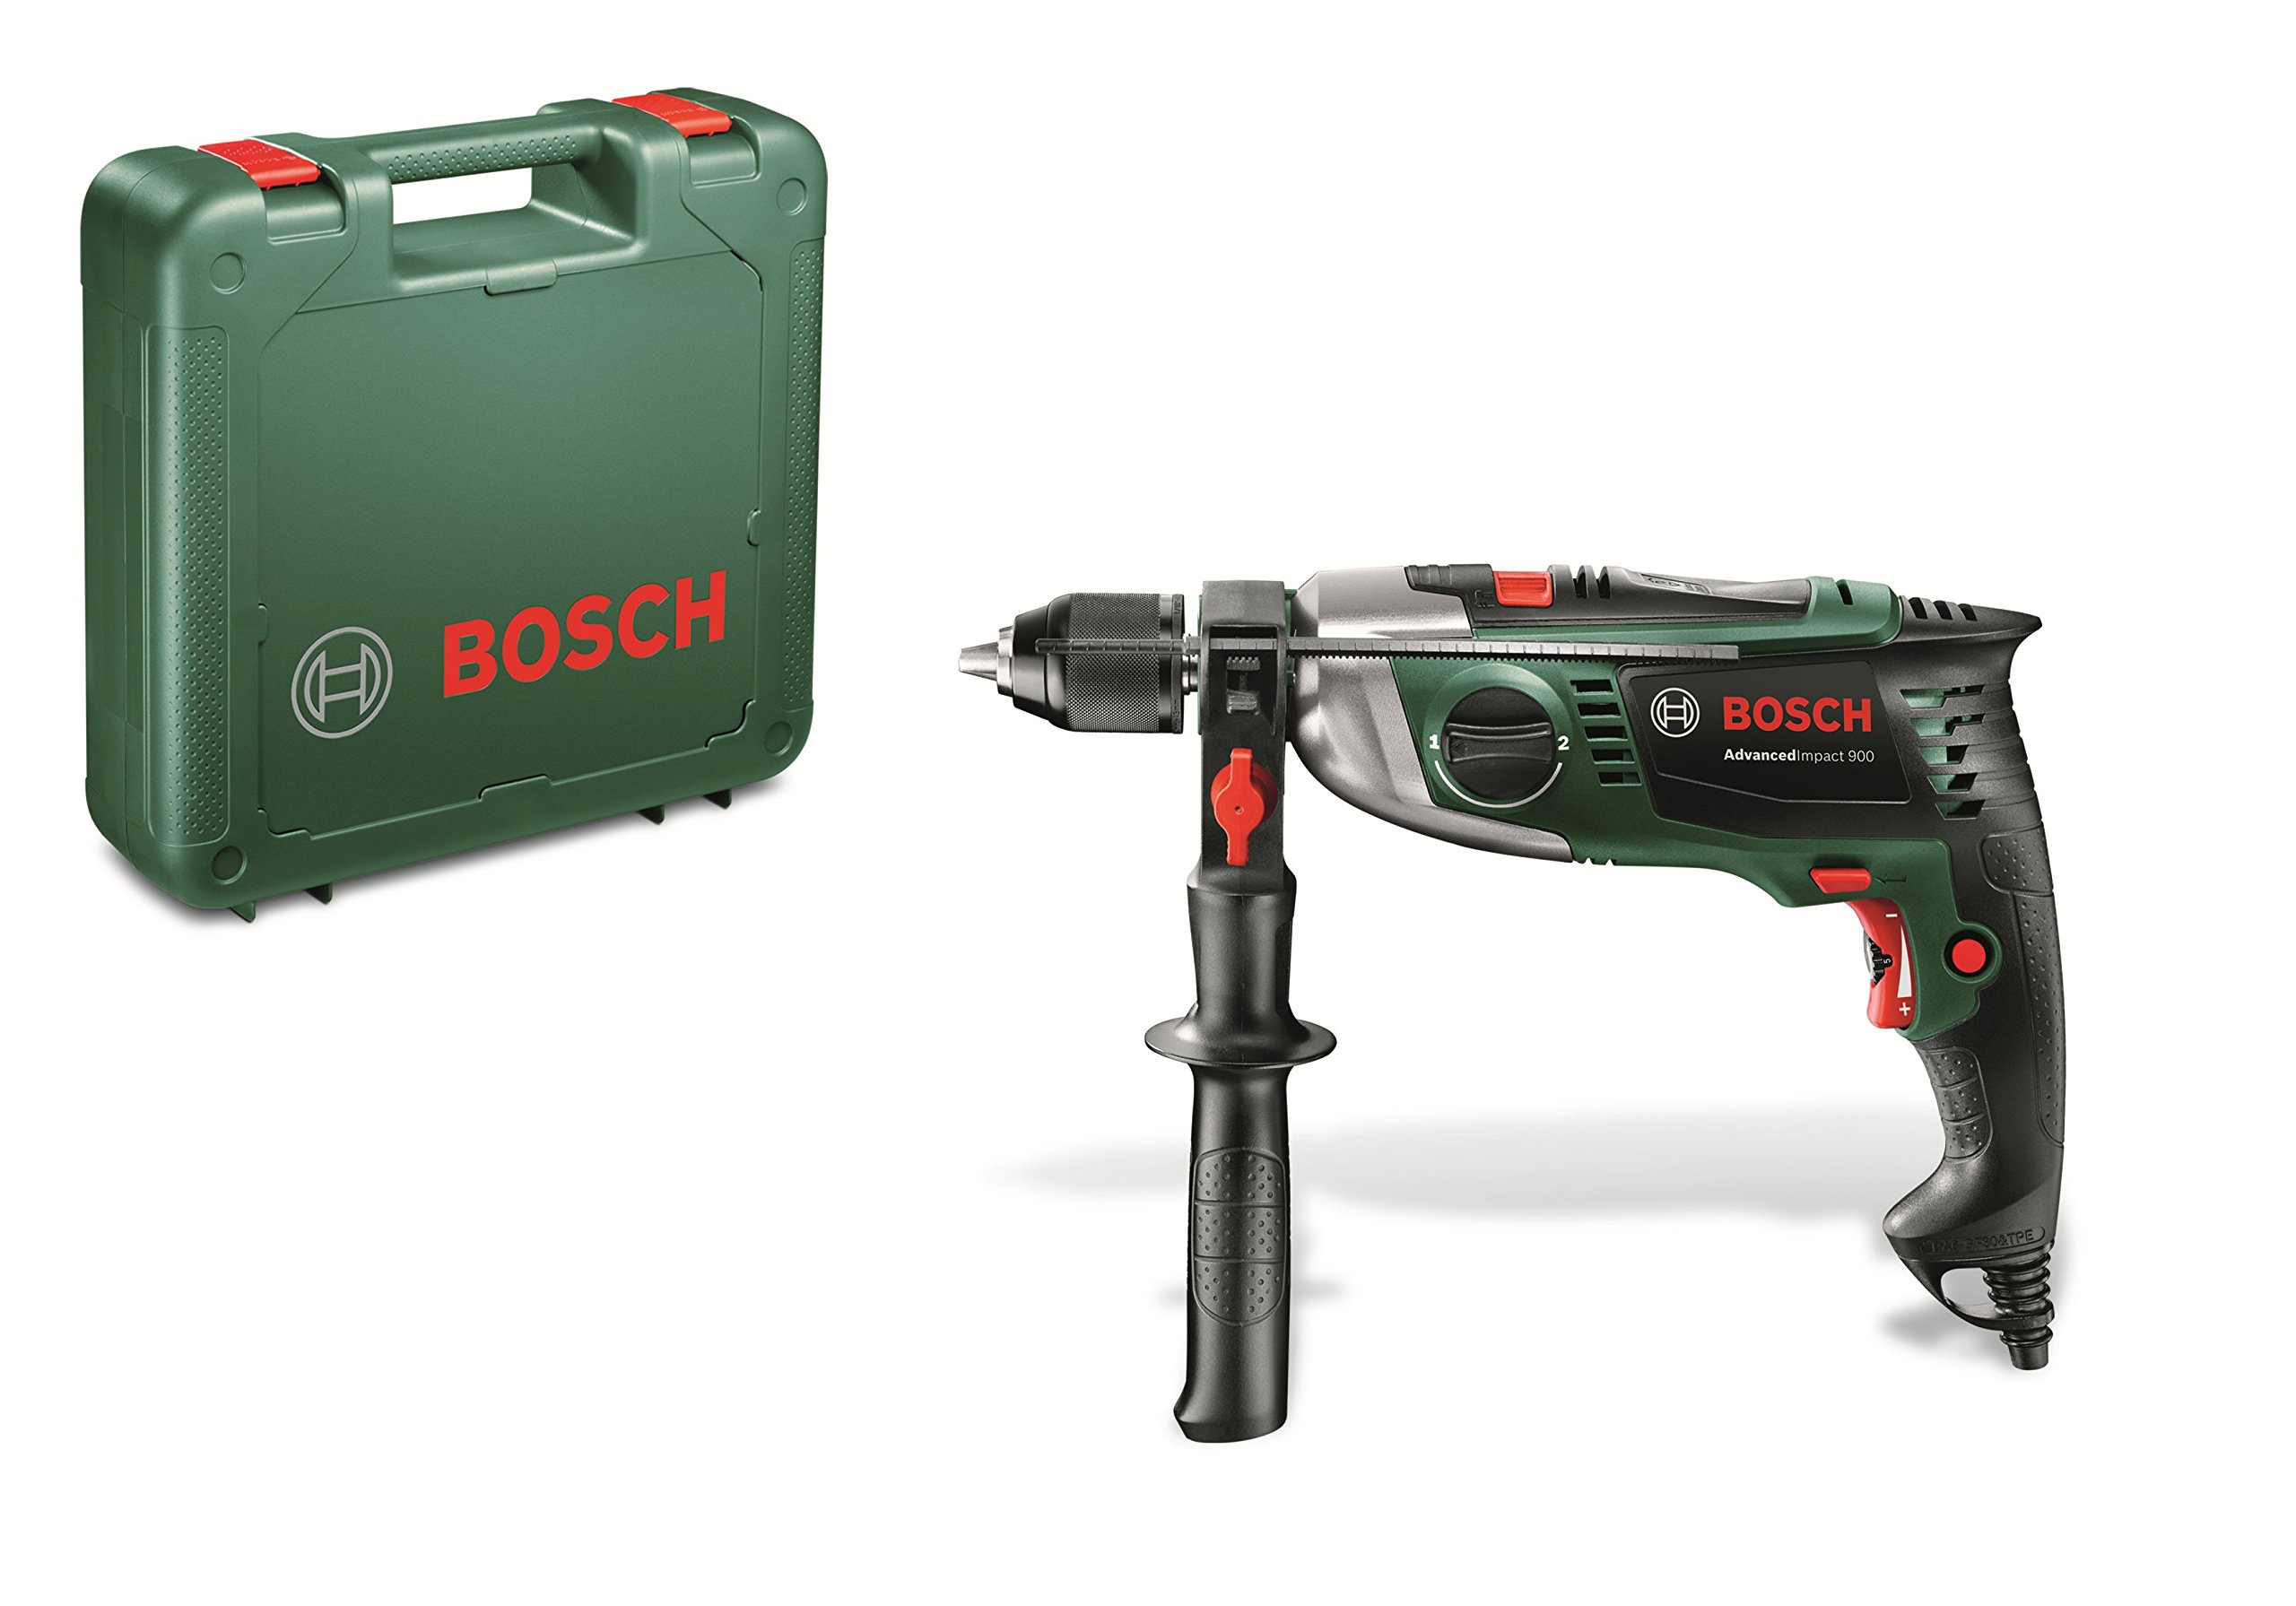 Bosch Home and Garden Bosch Schlagbohrmaschine AdvancedImpact 900 (Zusatzhandgriff, Tiefenanschlag, Koffer, 900 Watt)